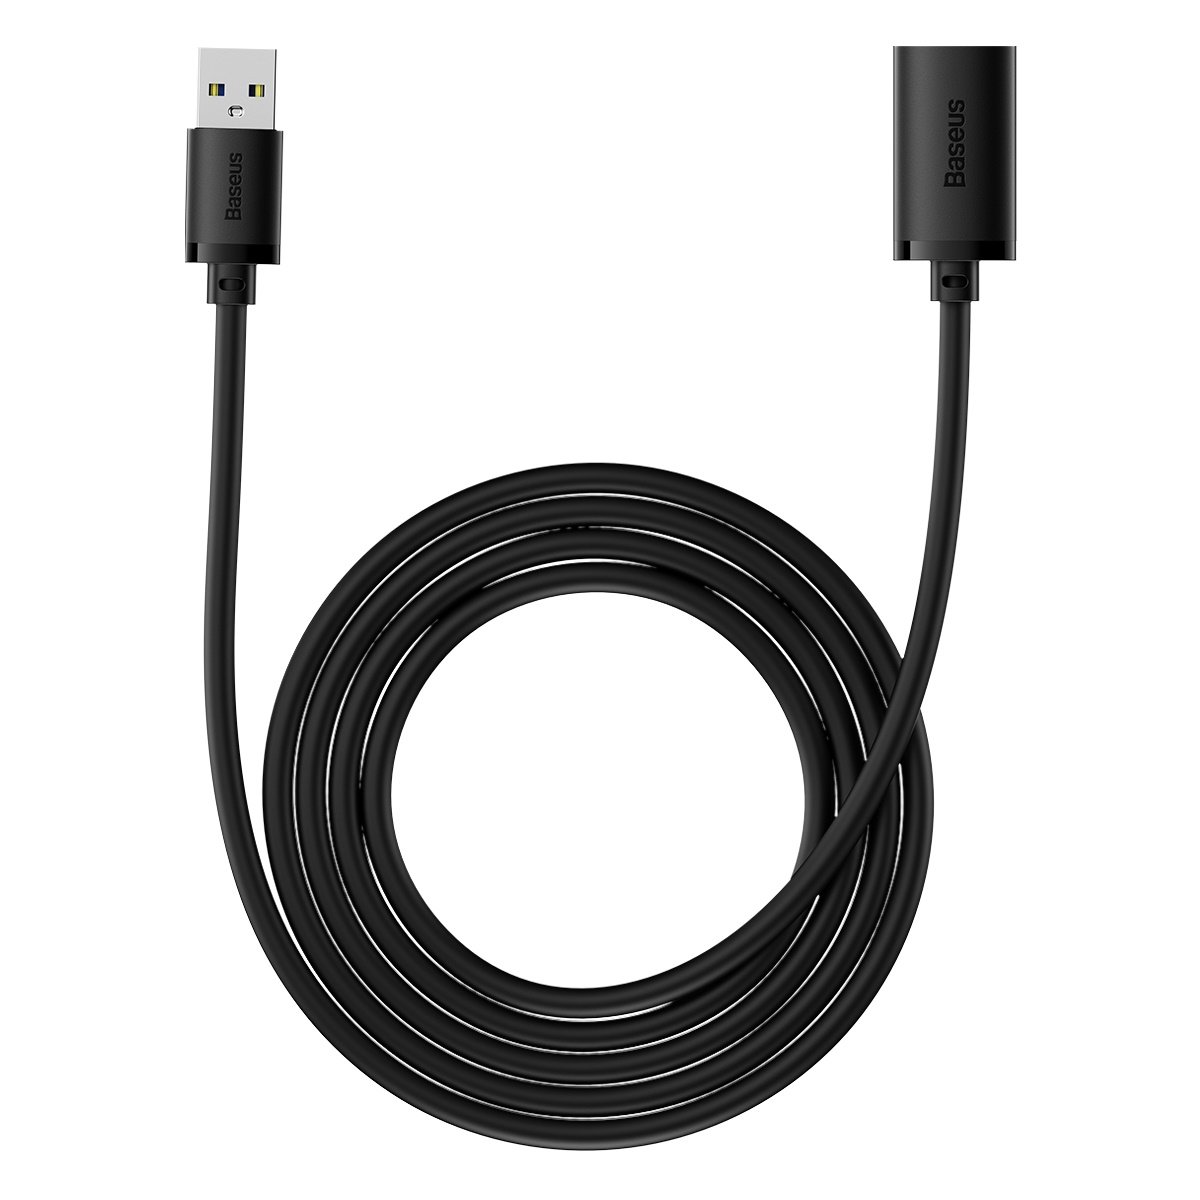 Baseus AirJoy Series USB 3.0 hosszabbító kábel 2 m fekete